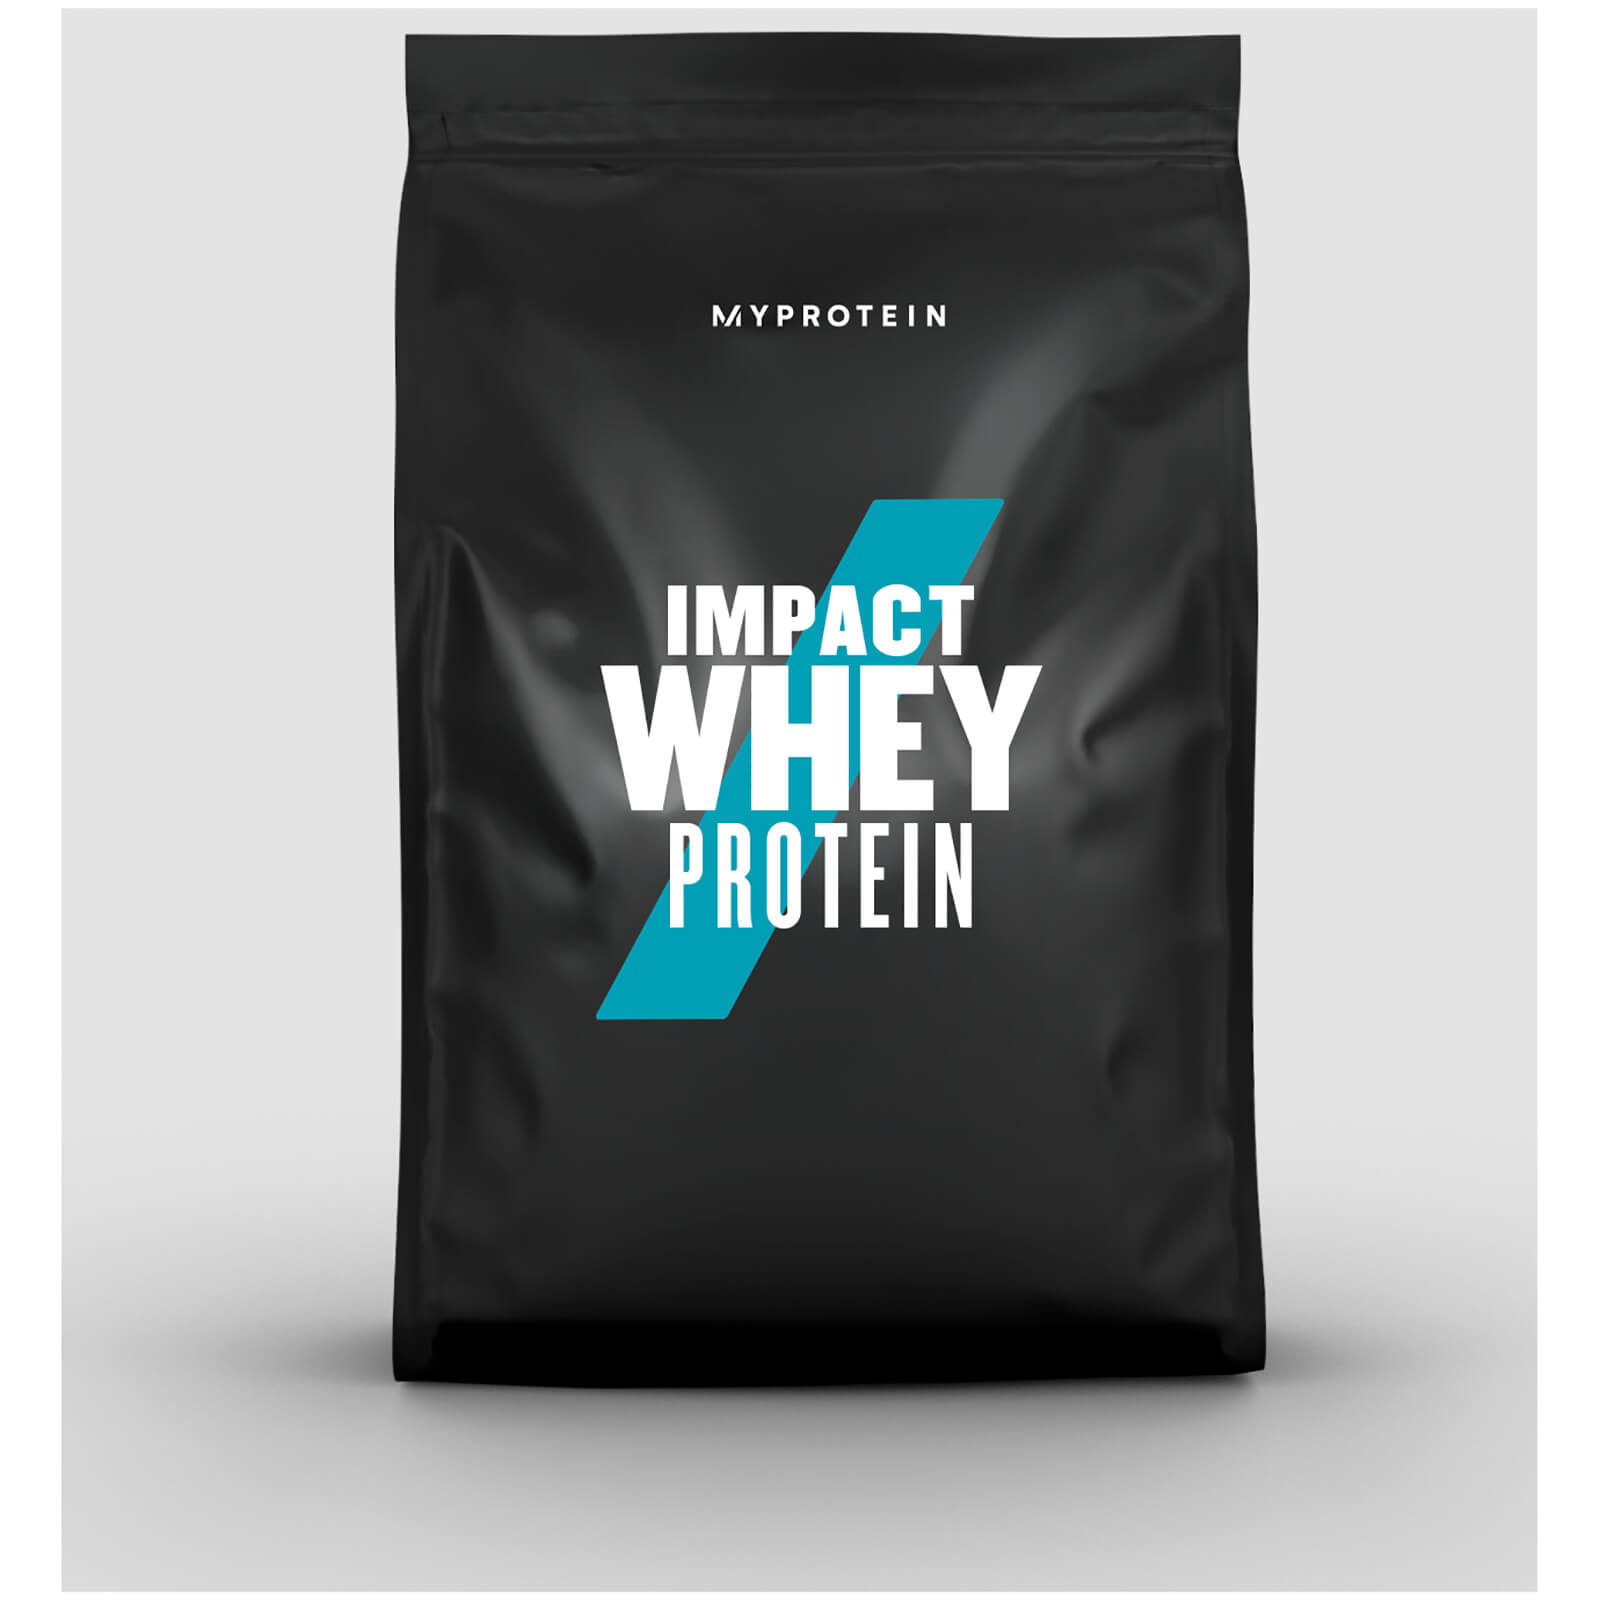 Myprotein Impact Whey Protein - 500g - Dark Chocolate &amp; Salted Caramel